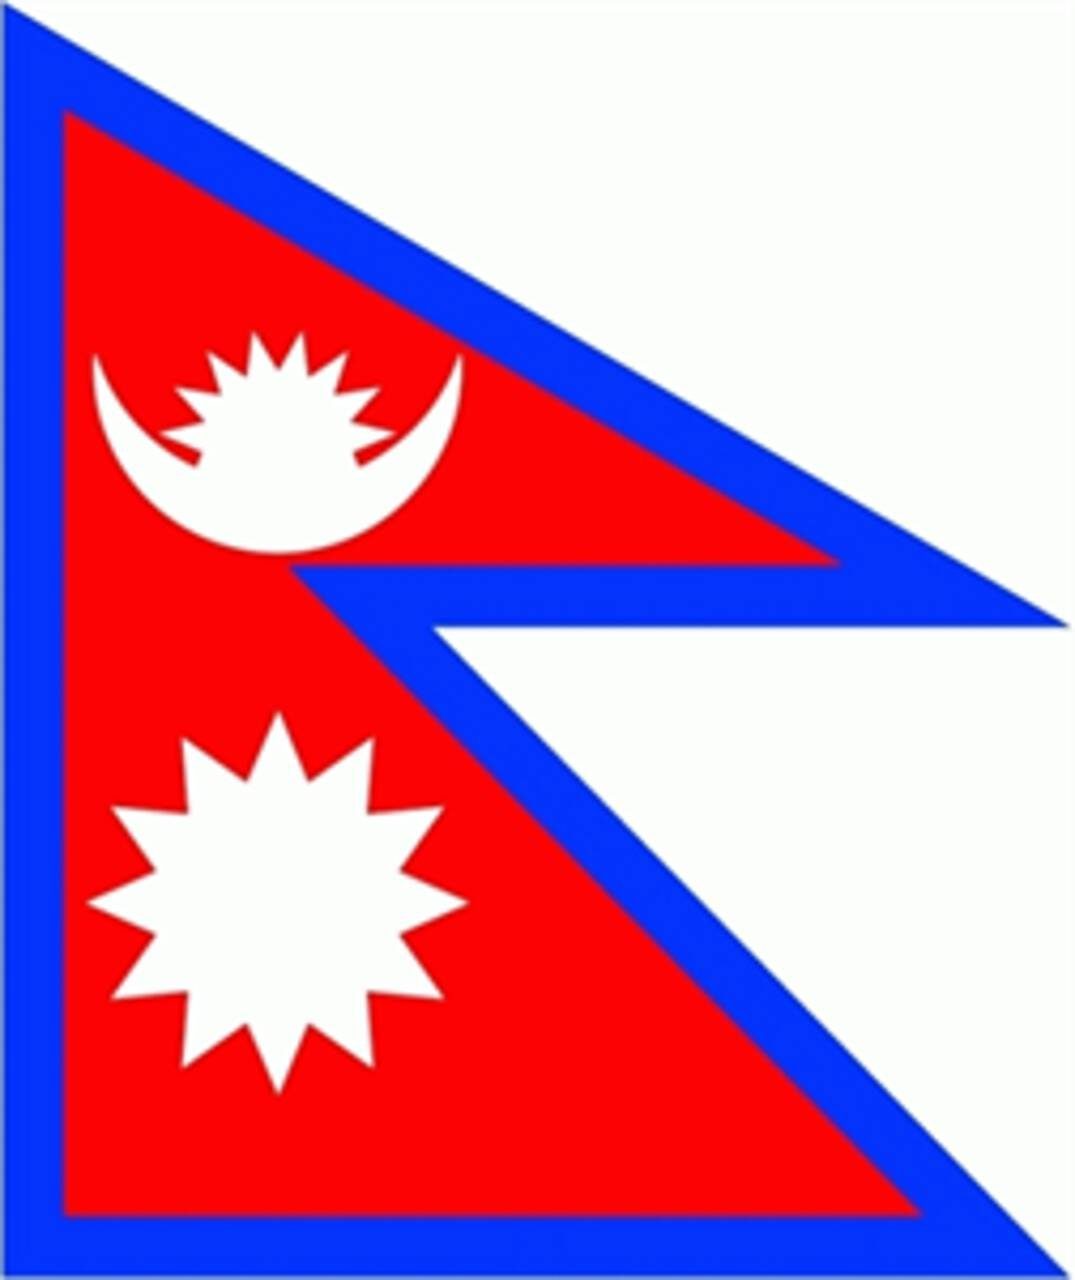 g/m² 80 Nepal flaggenmeer Flagge